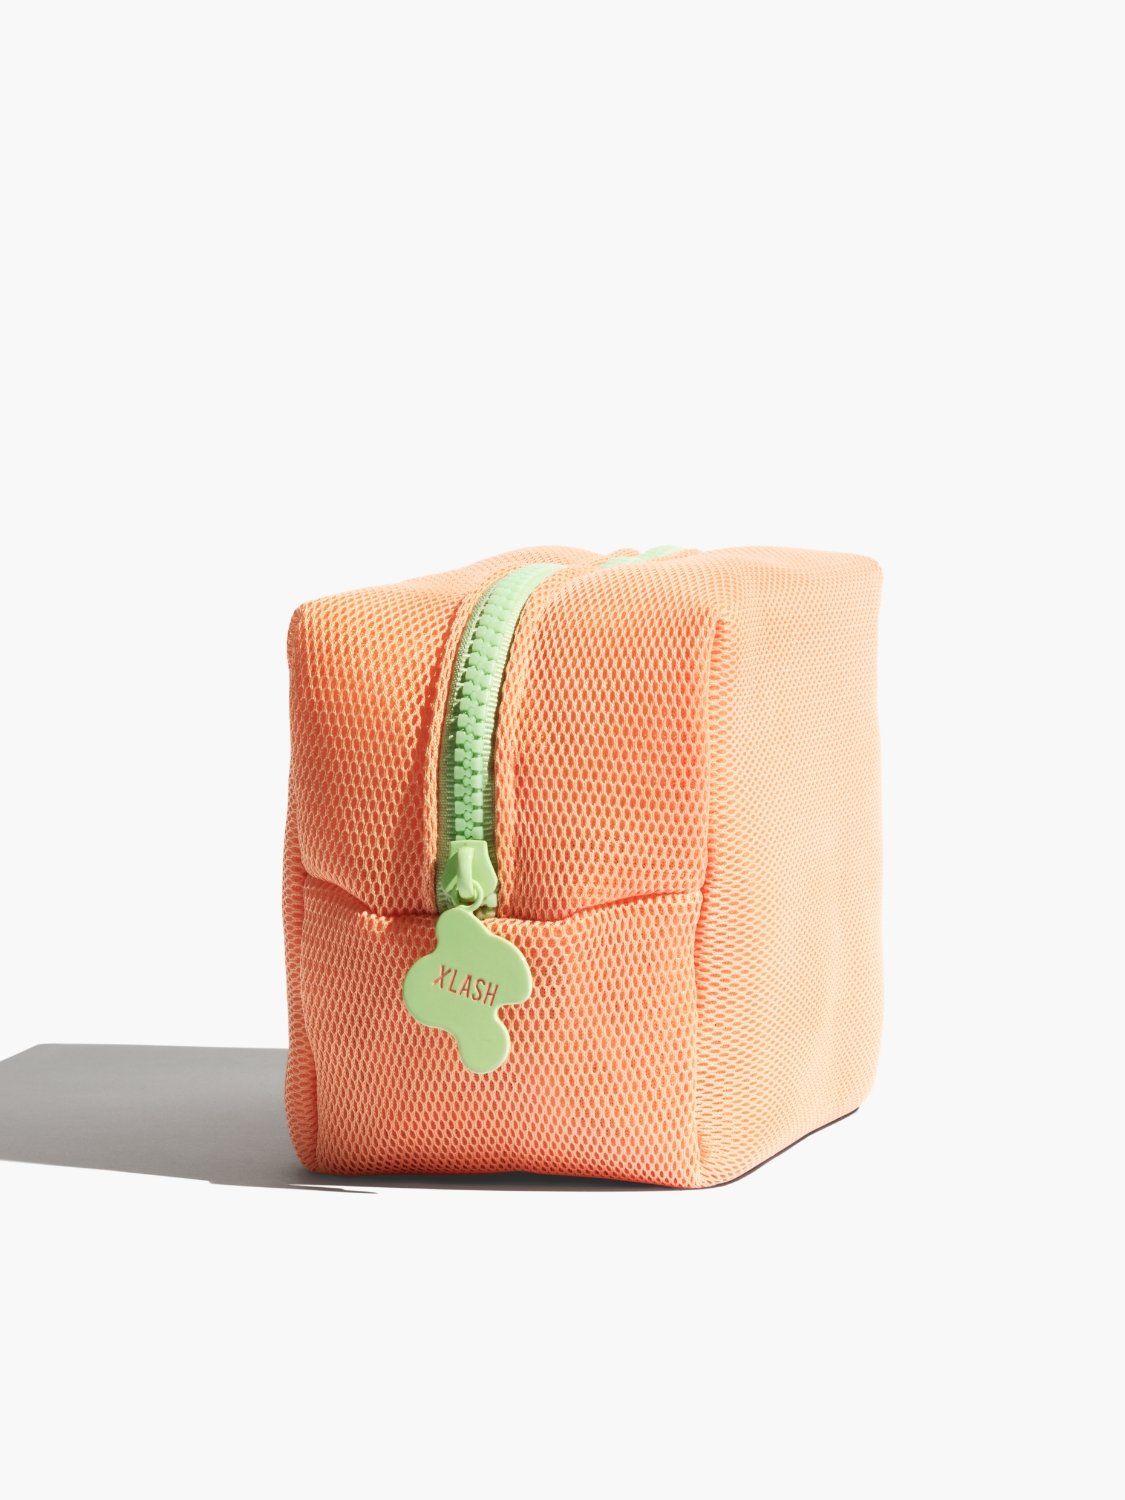 The Xlash beauty bag, Peach